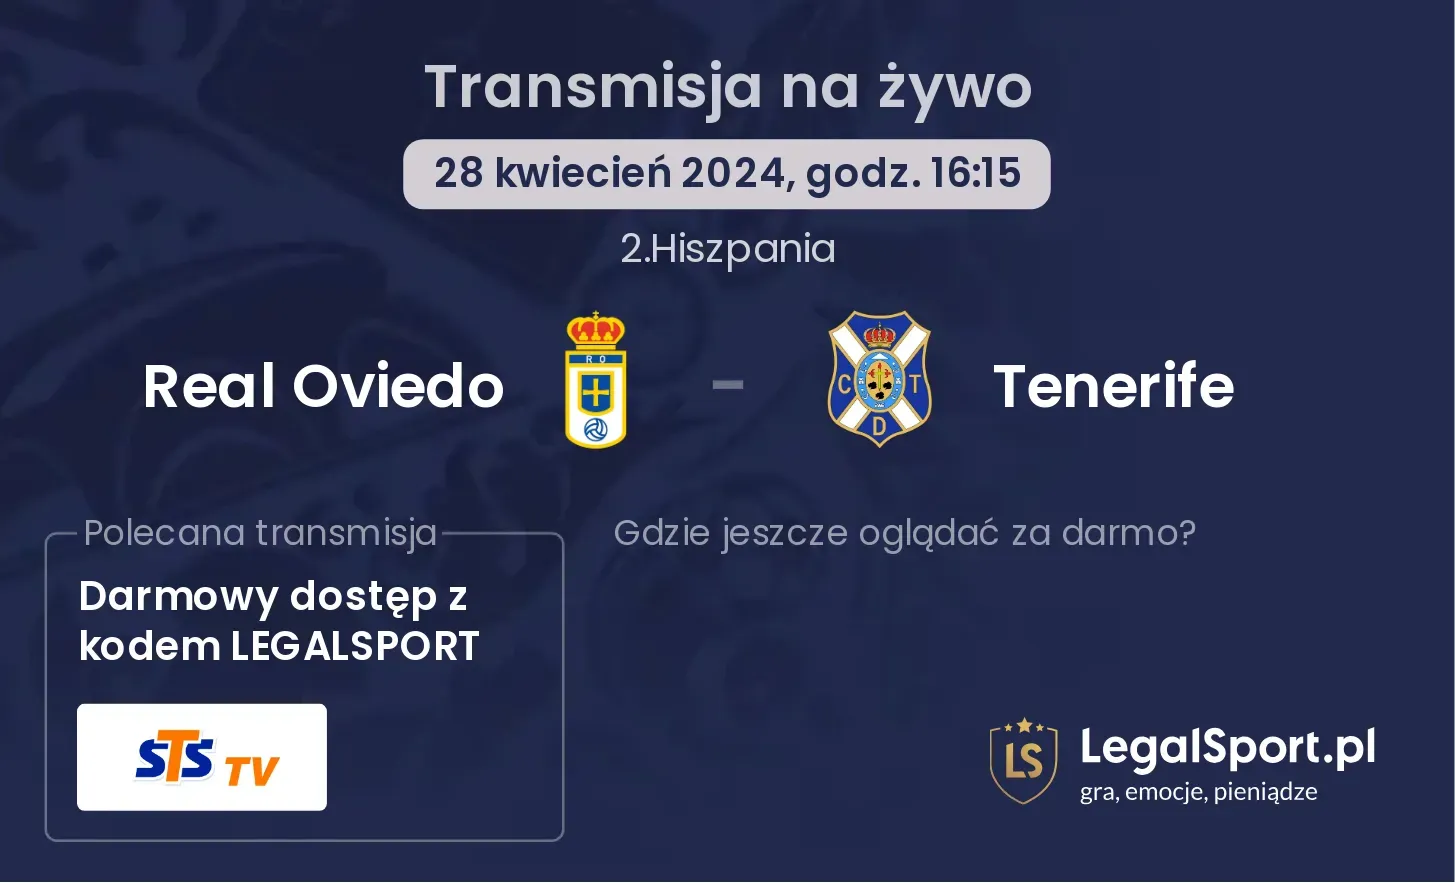 Real Oviedo - Tenerife transmisja na żywo